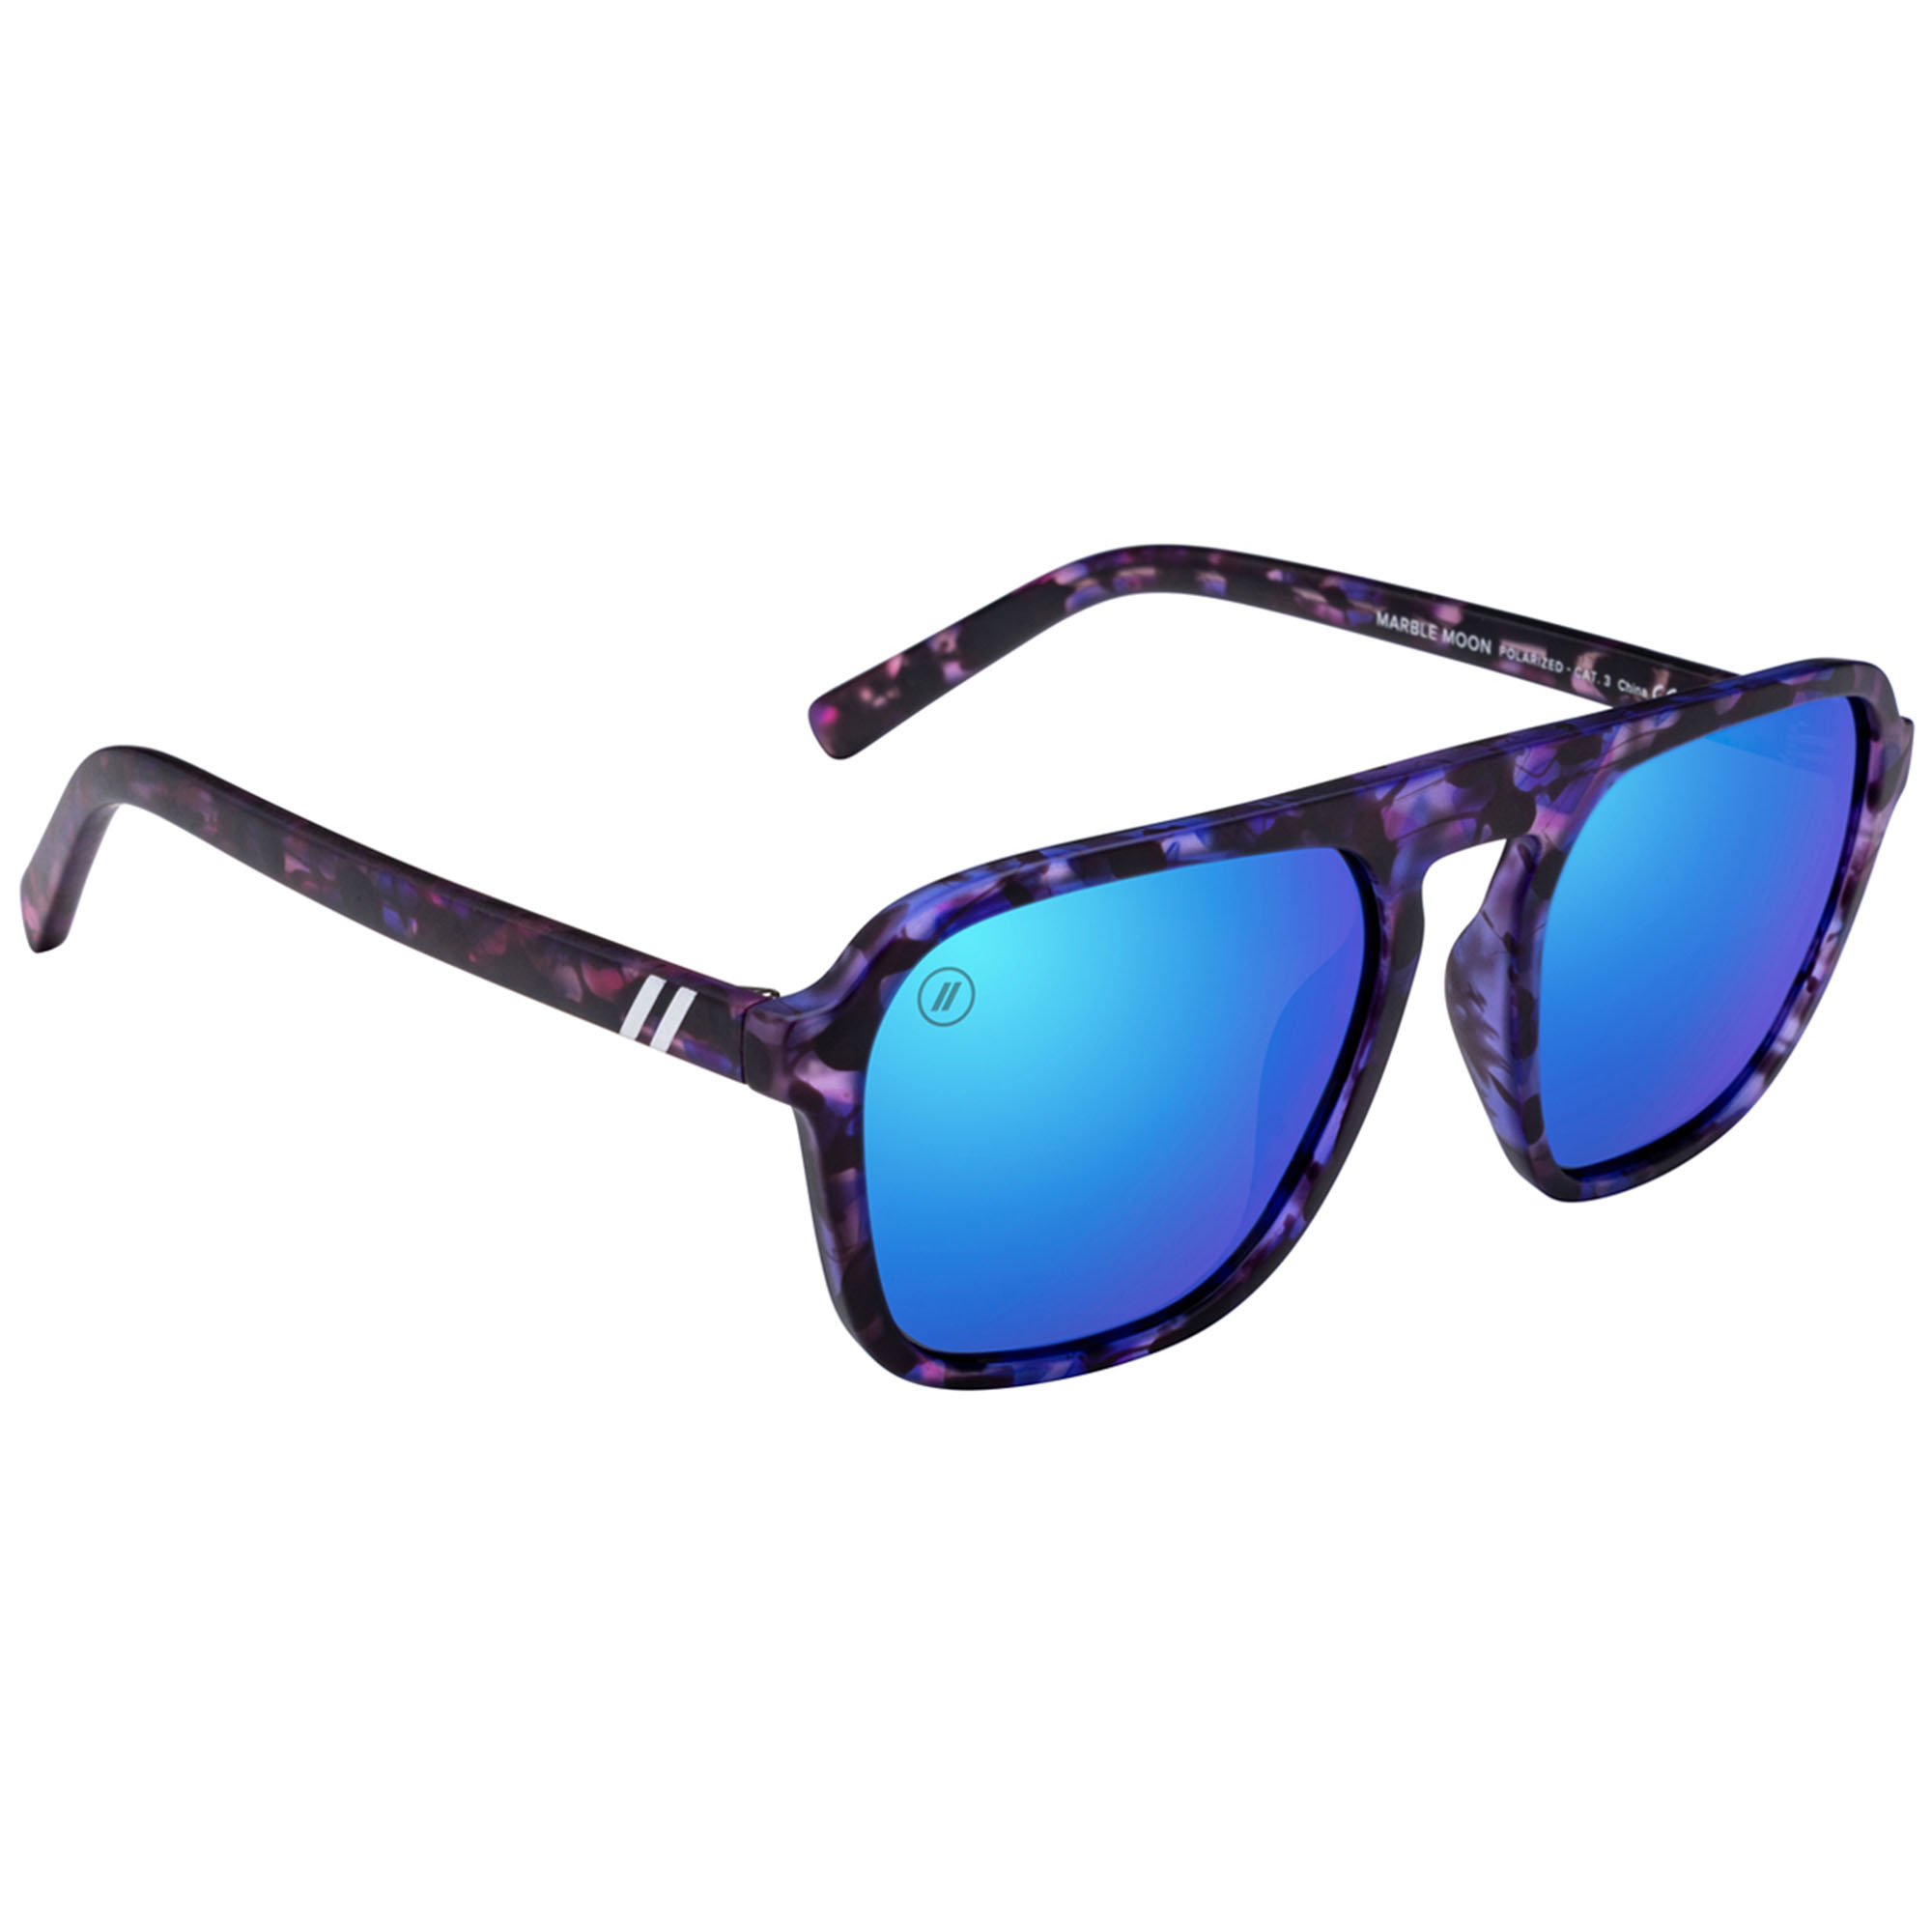 Blenders Eyewear Meister Sunglasses -  00810112715453